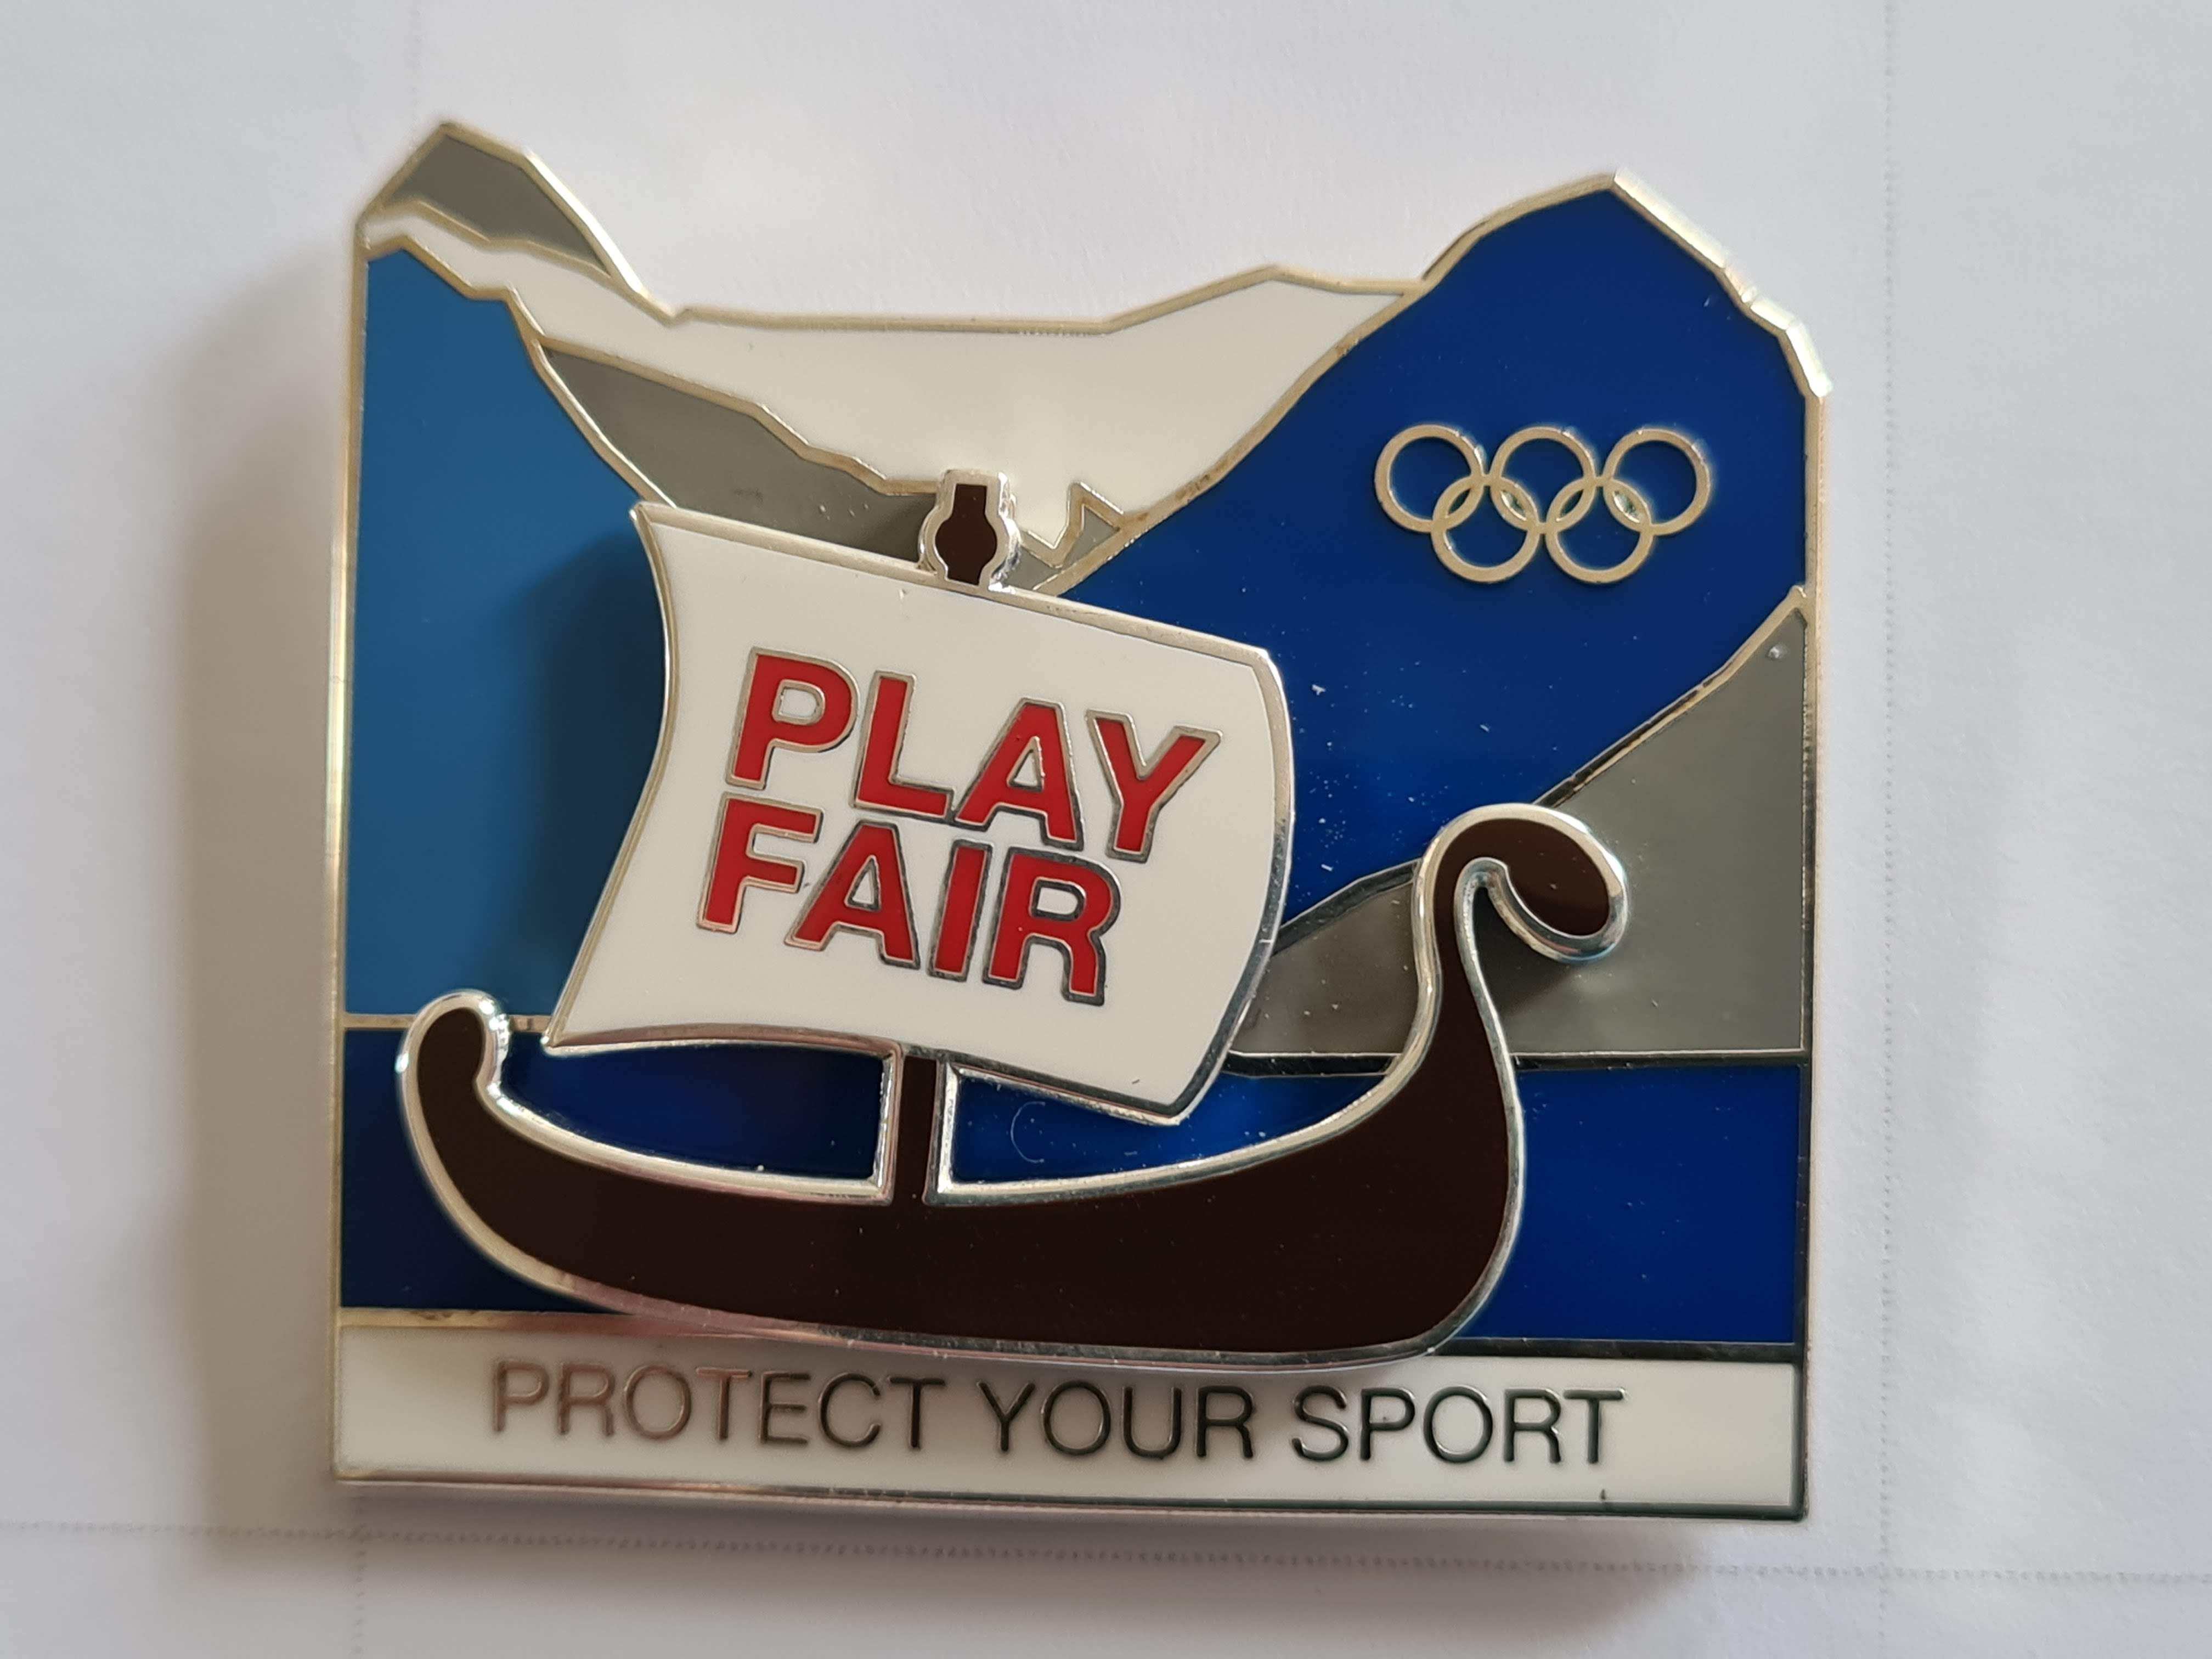 Fair Play - Youth Olympics Lillehammer 2016